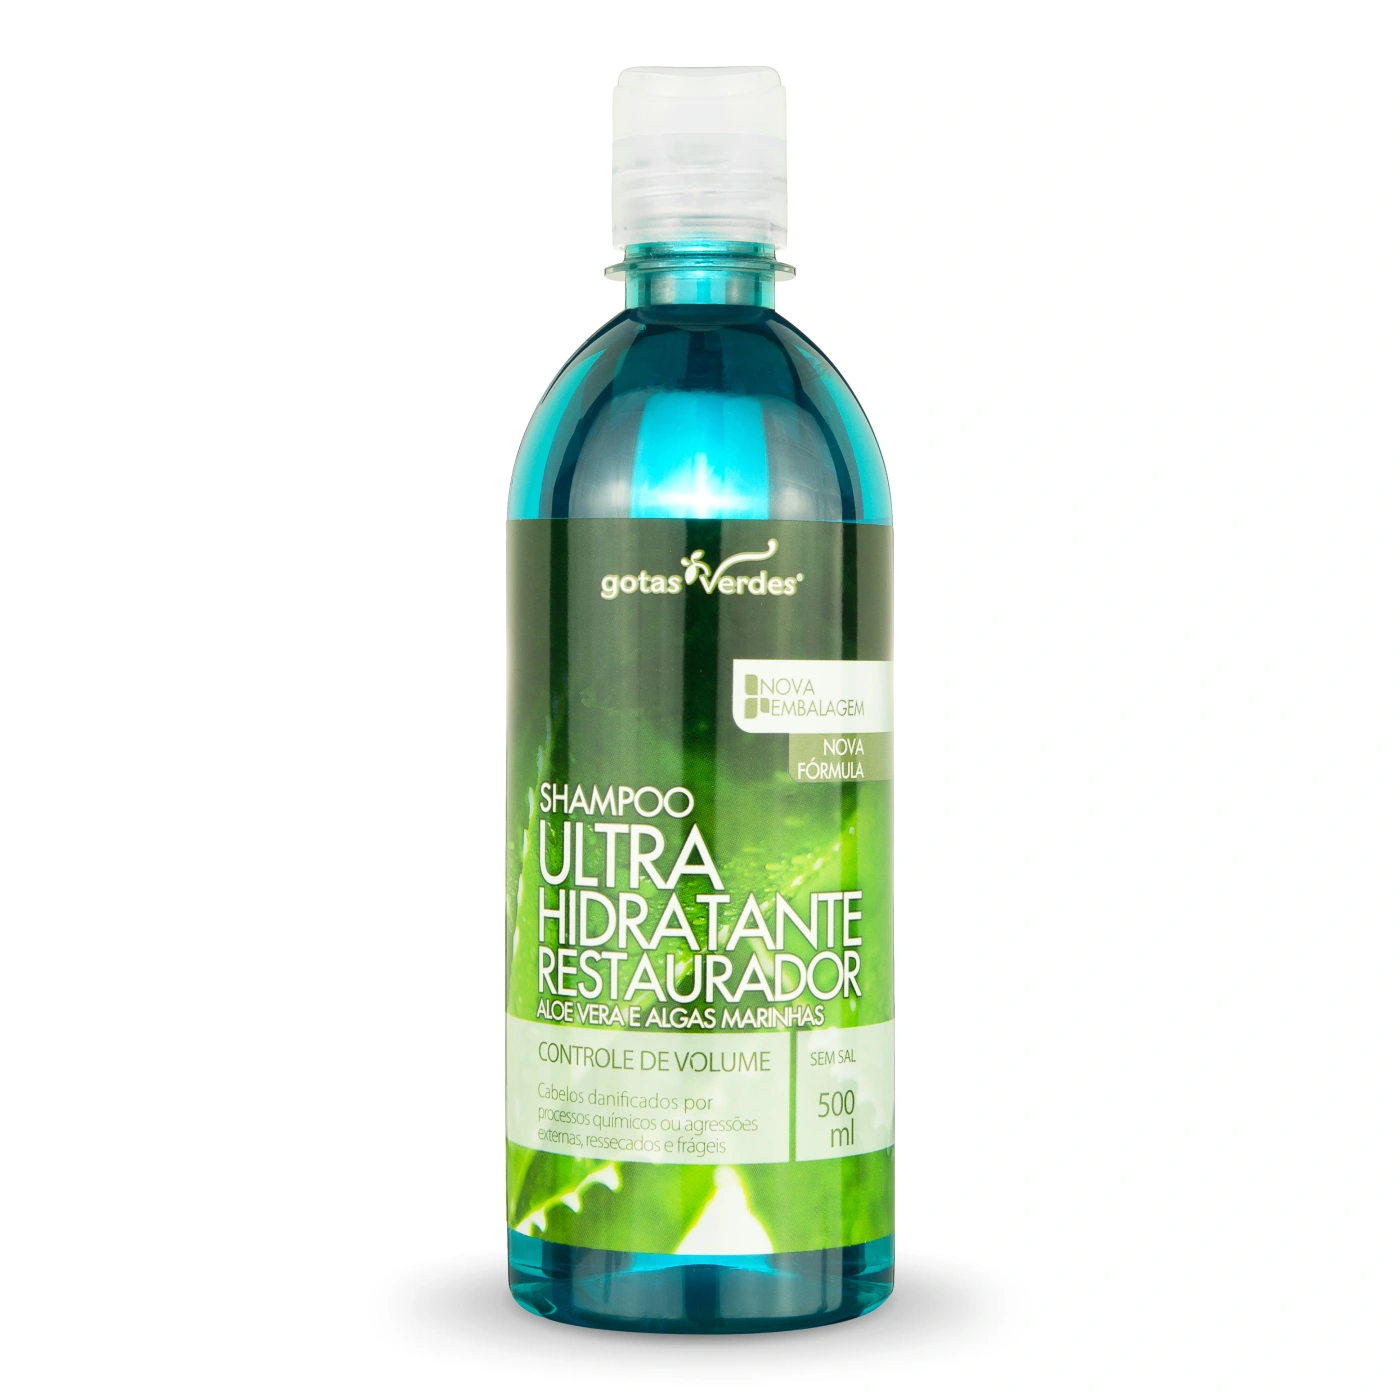 Shampoo Ultra Hidratante Restaurador Aloe Vera